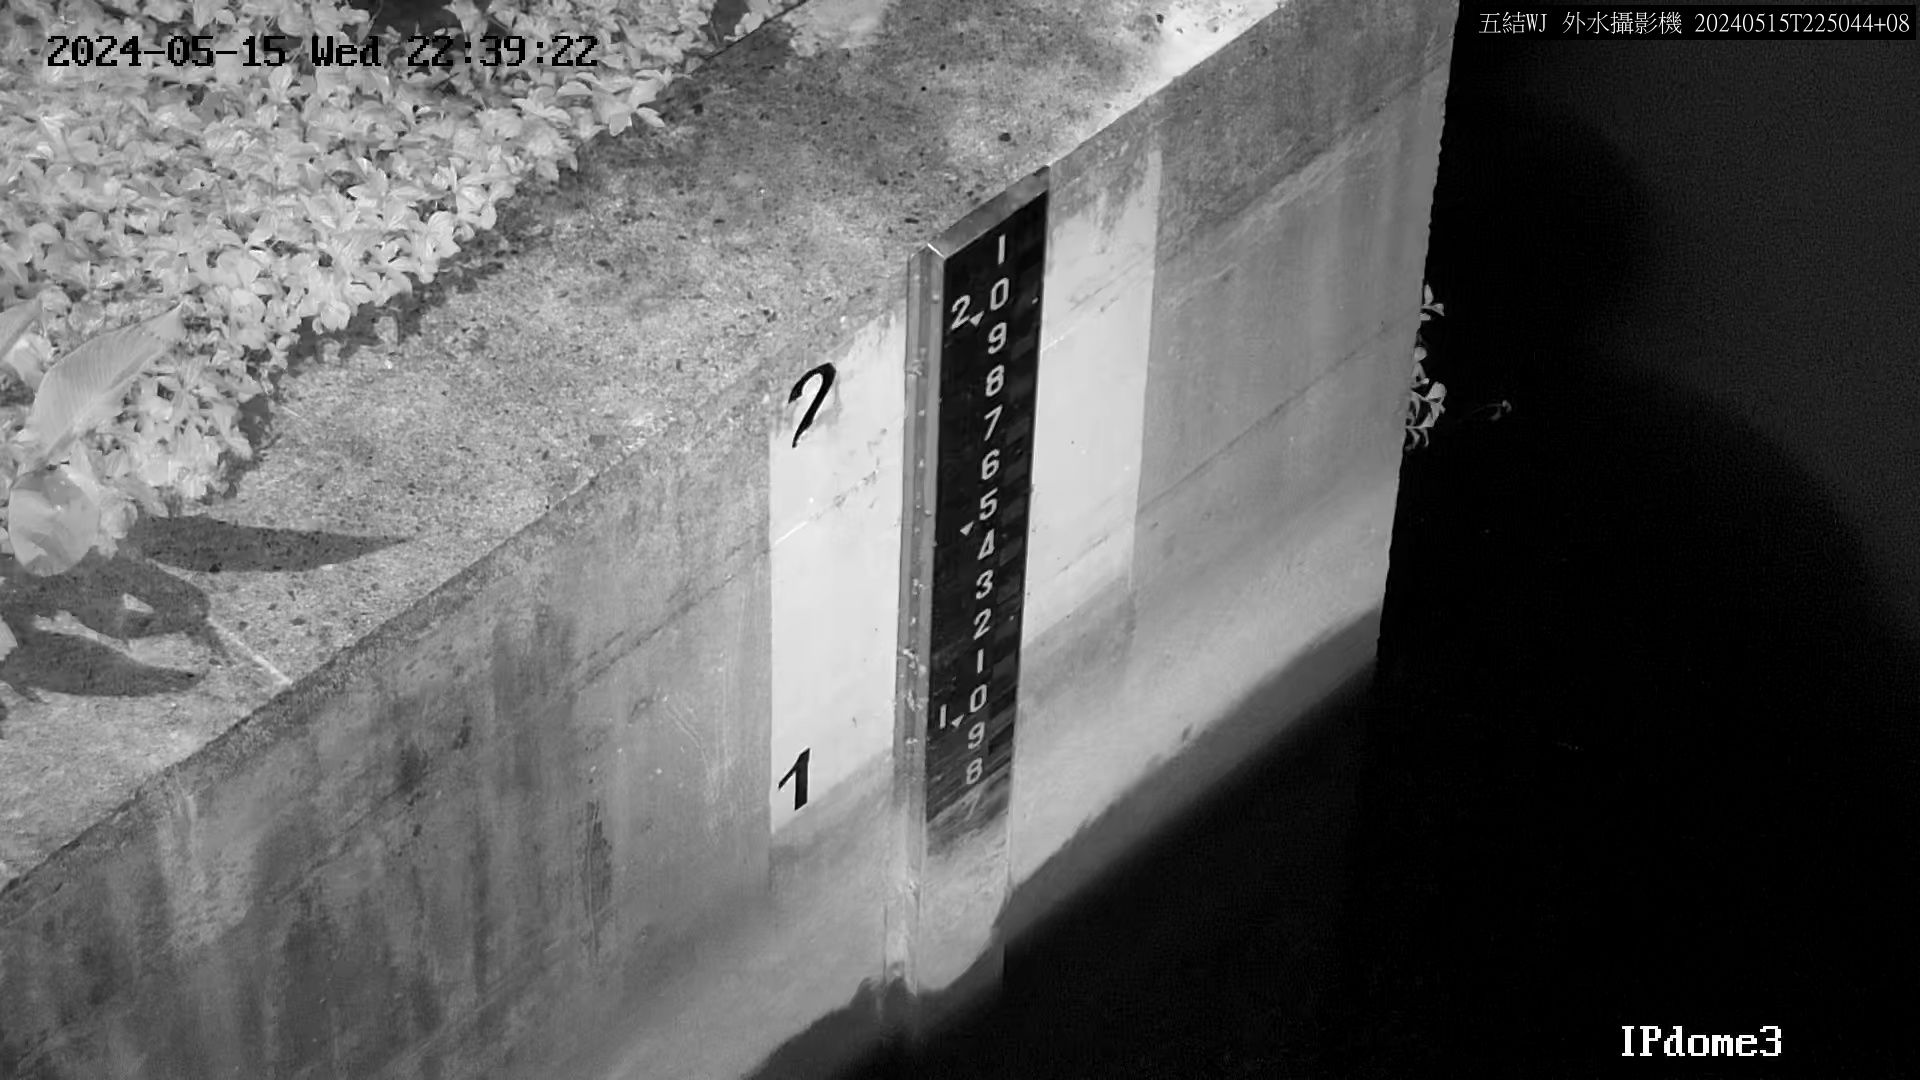 水利署水資源  一河局 五結副閘排水防潮閘門外水位 距離2.0公里 氣溫26.9度